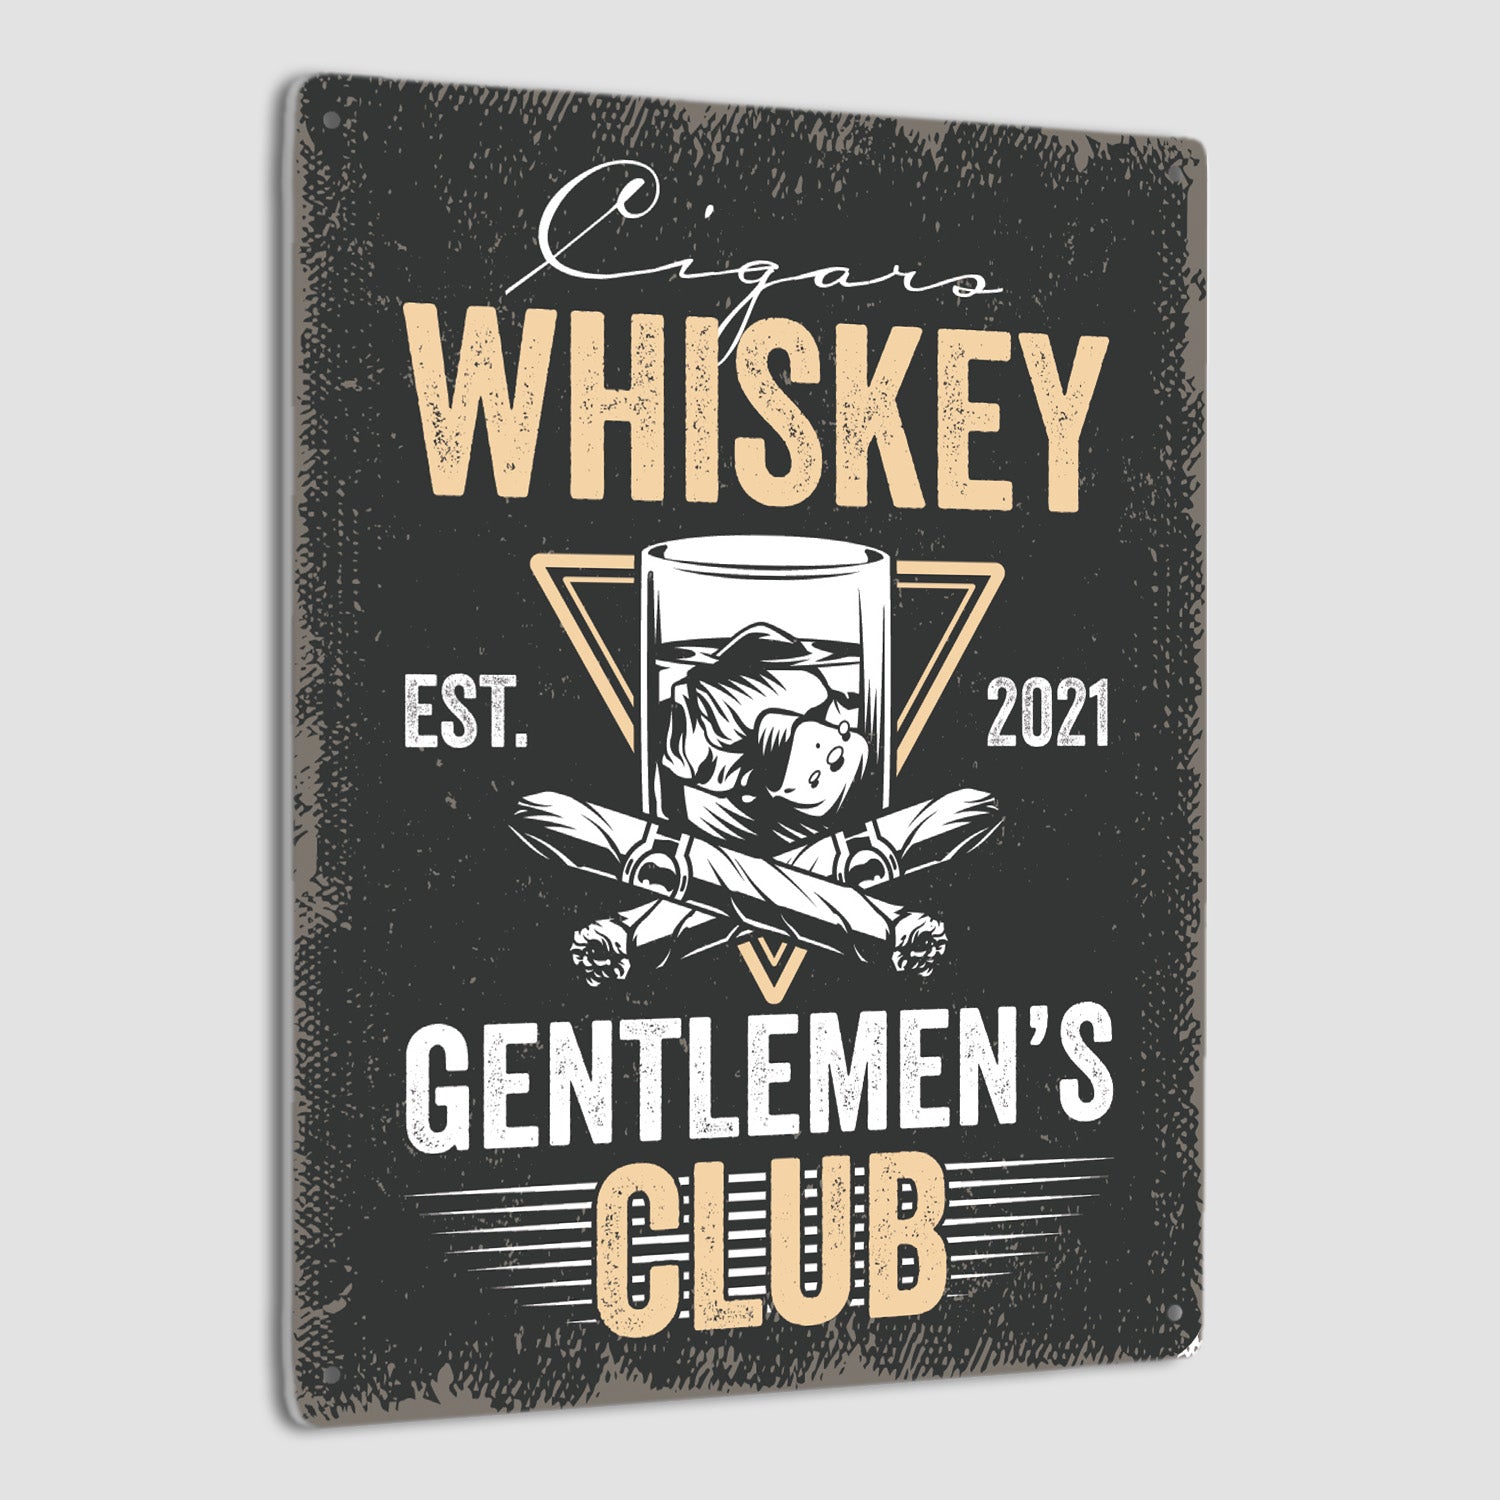 Cigars Whiskey Gentlemen's Club, Custom Metal Signs